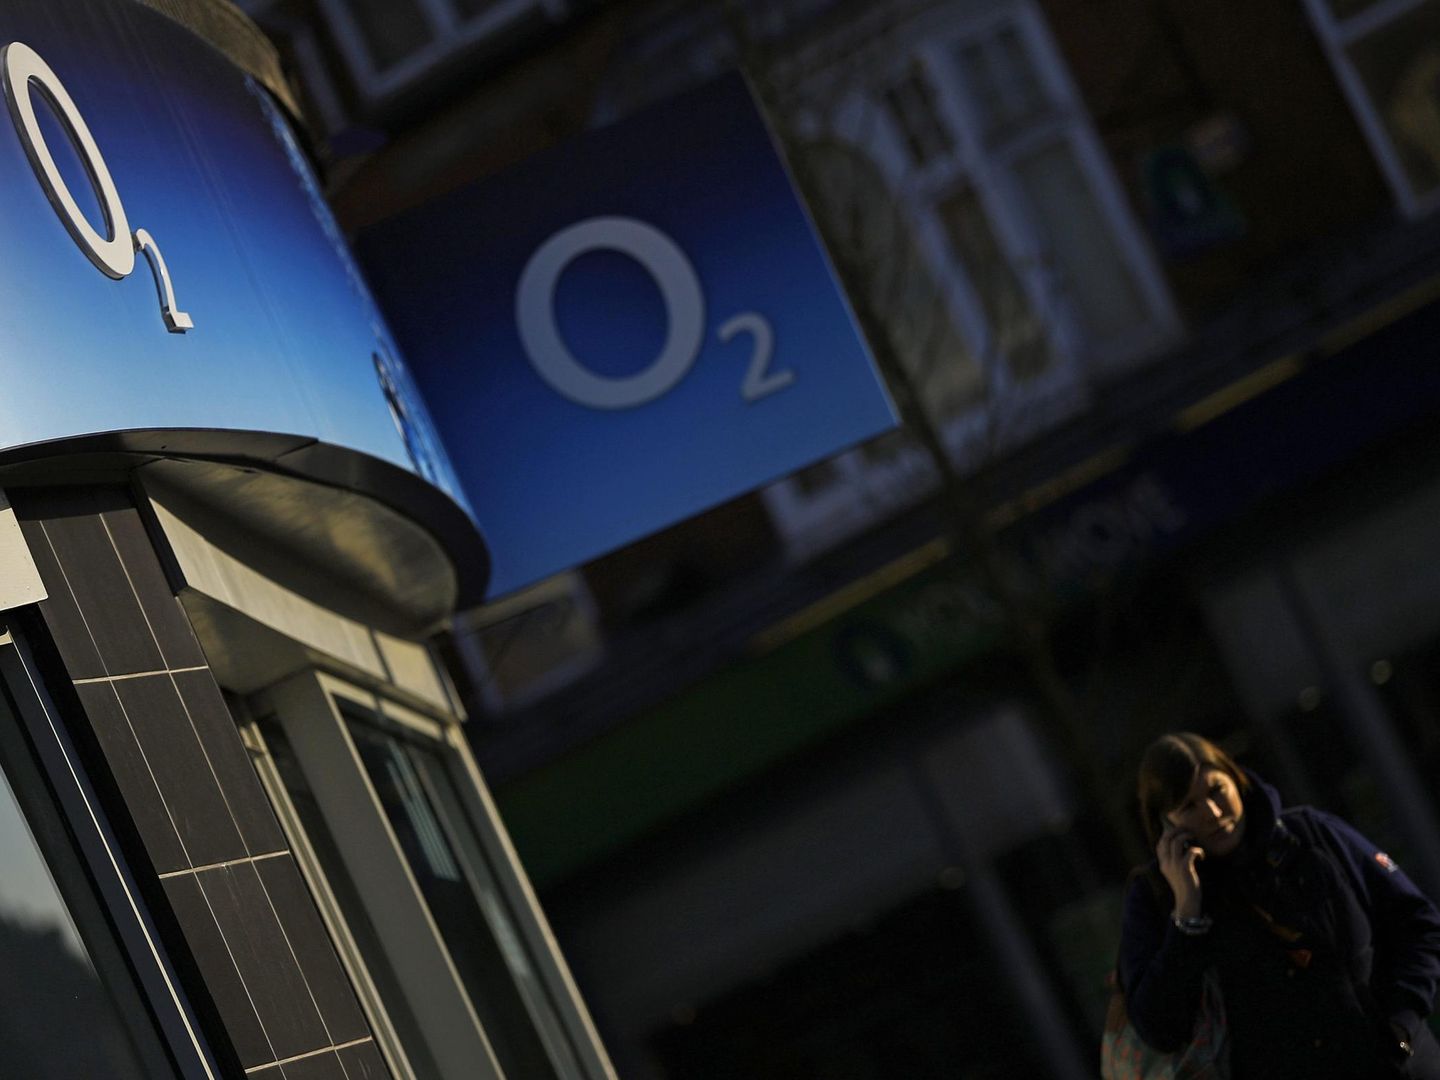 La marca británica O2 da nombre al nuevo operador de Teléfonica. (Reuters)